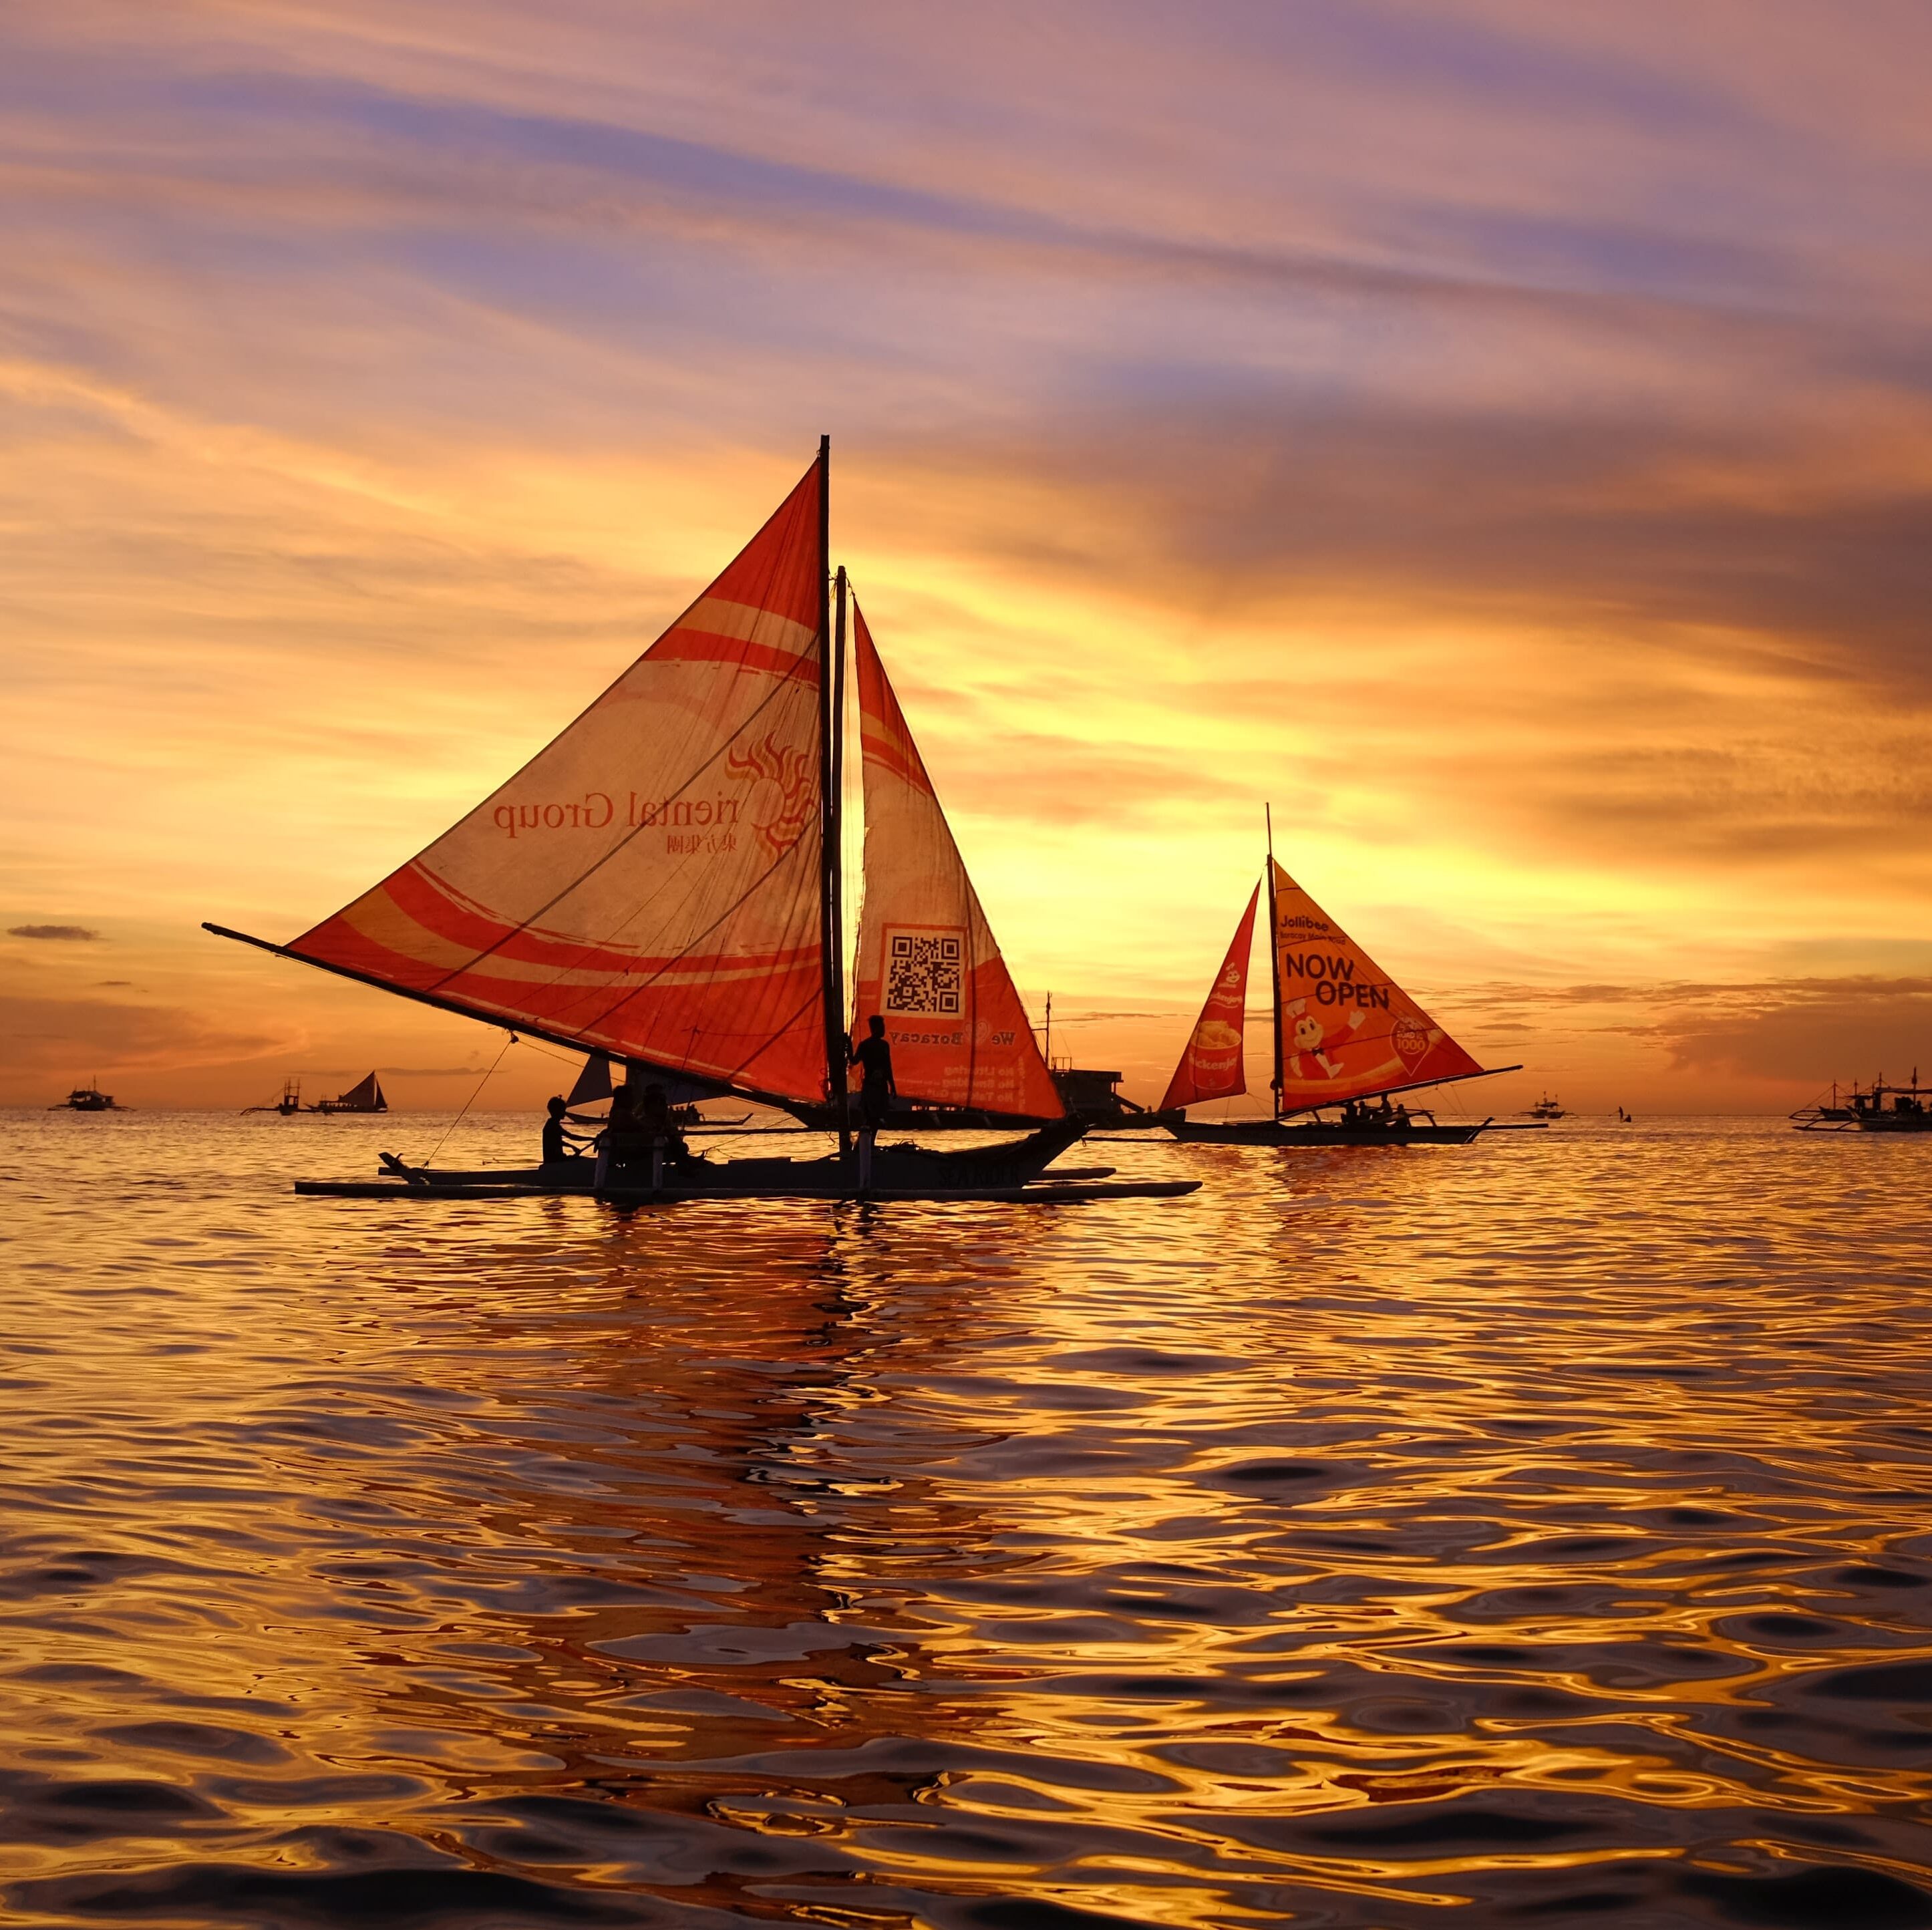 Découvrez l'île de Boracay et ses plages paradisiaques aux Philippines - coucher de soleil